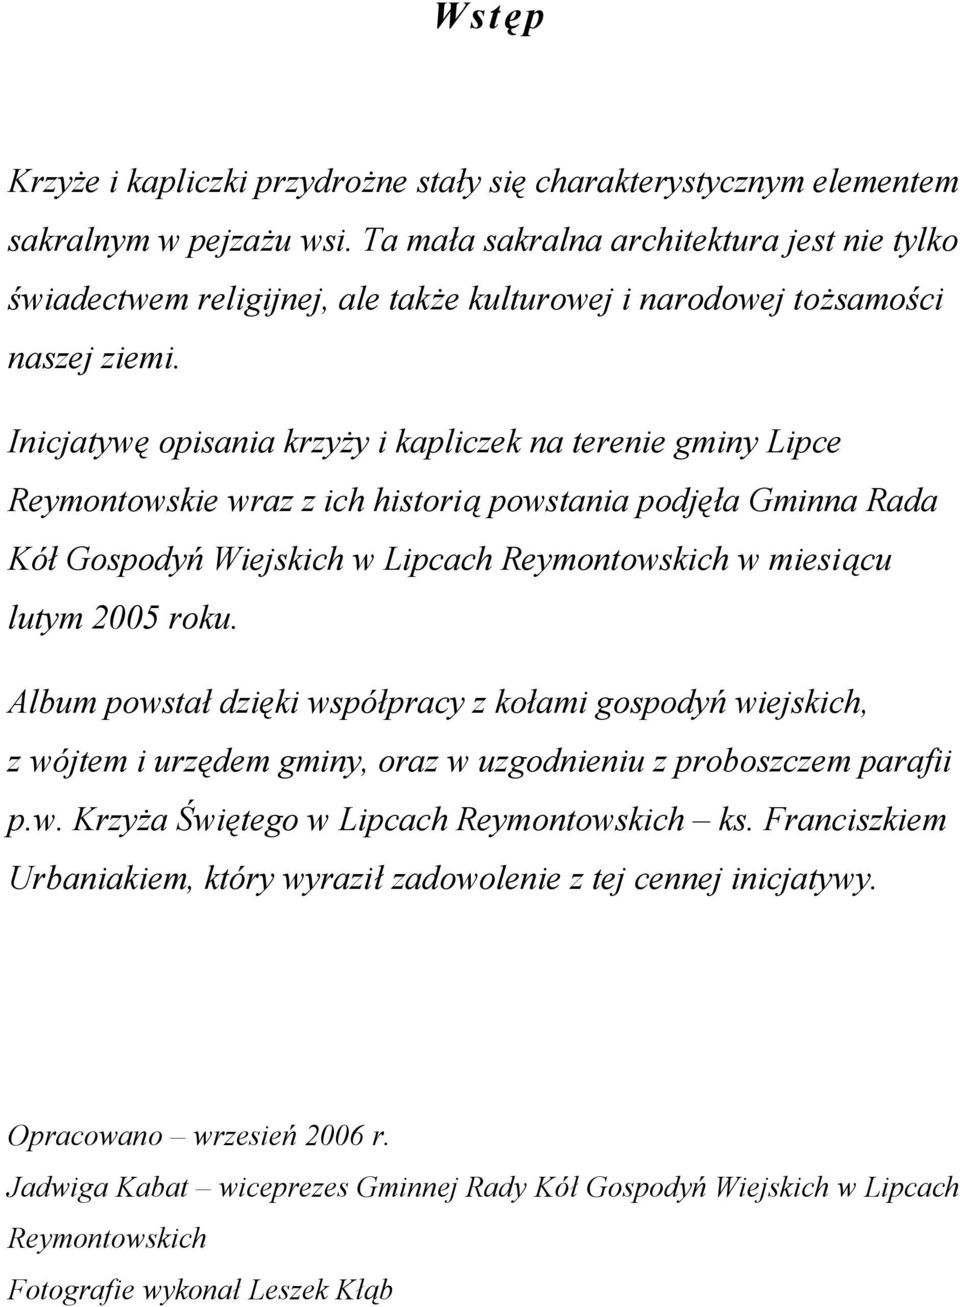 Inicjatywę opisania krzyży i kapliczek na terenie gminy Lipce Reymontowskie wraz z ich historią powstania podjęła Gminna Rada Kół Gospodyń Wiejskich w Lipcach Reymontowskich w miesiącu lutym 2005